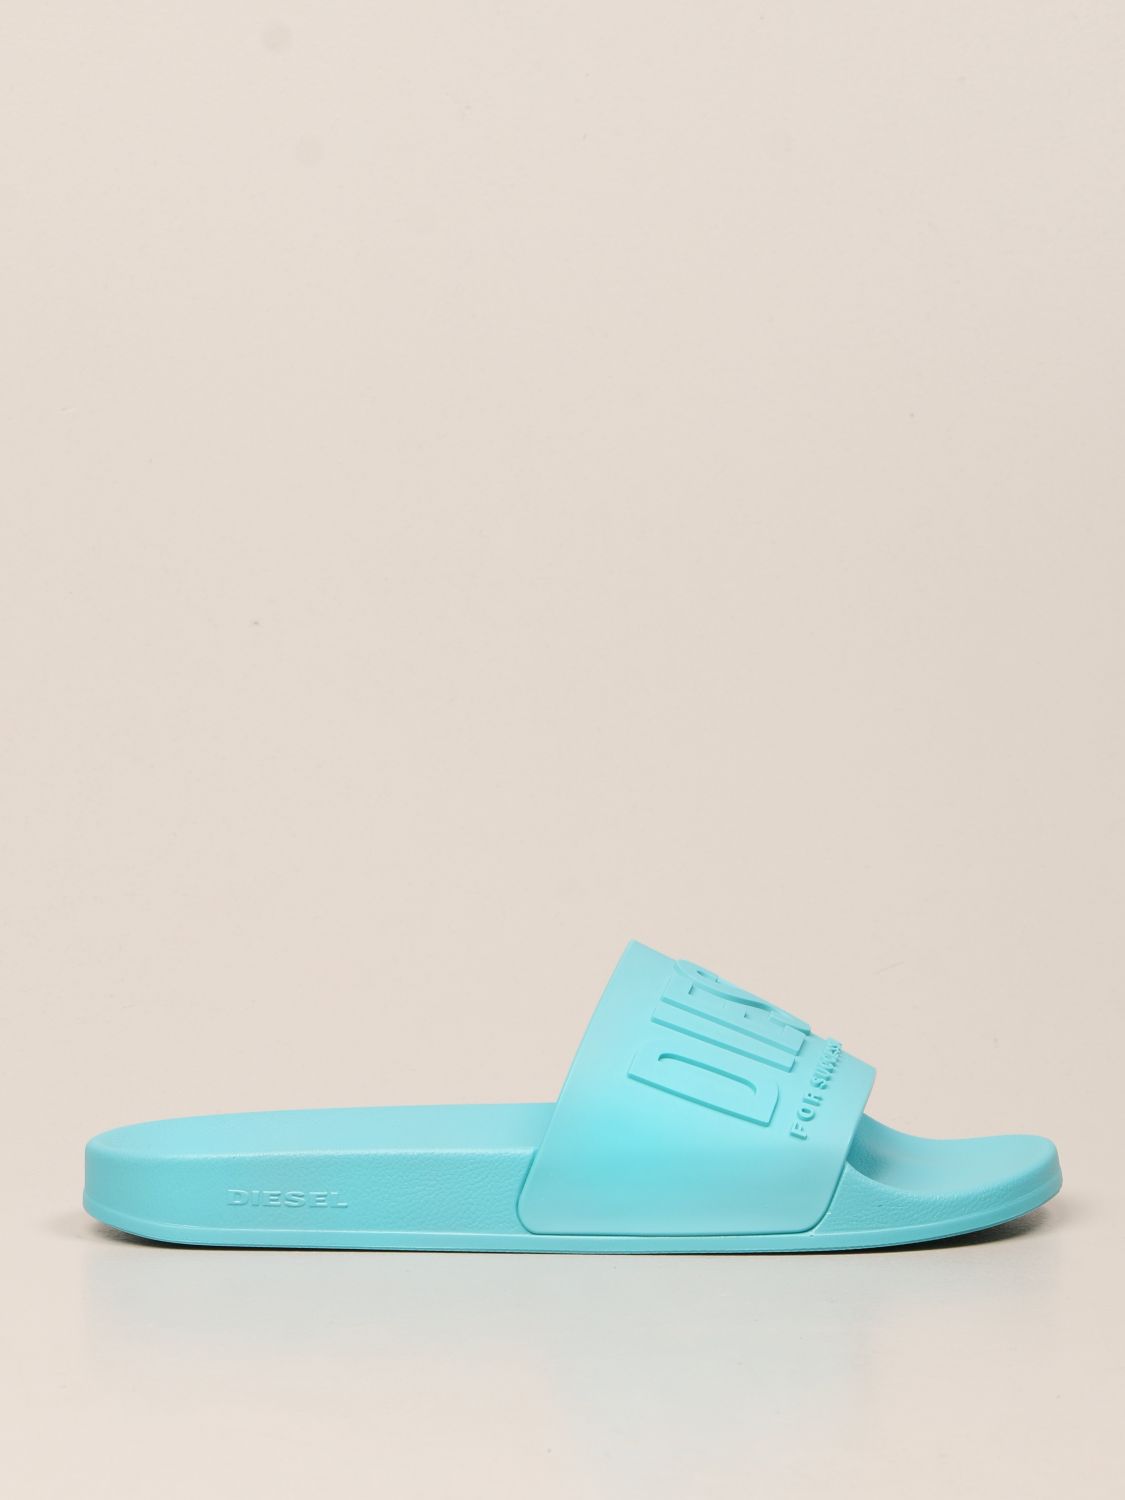 DIESEL: Slide rubber sandal - Gnawed Blue | Diesel sandals Y02499 P3859 ...